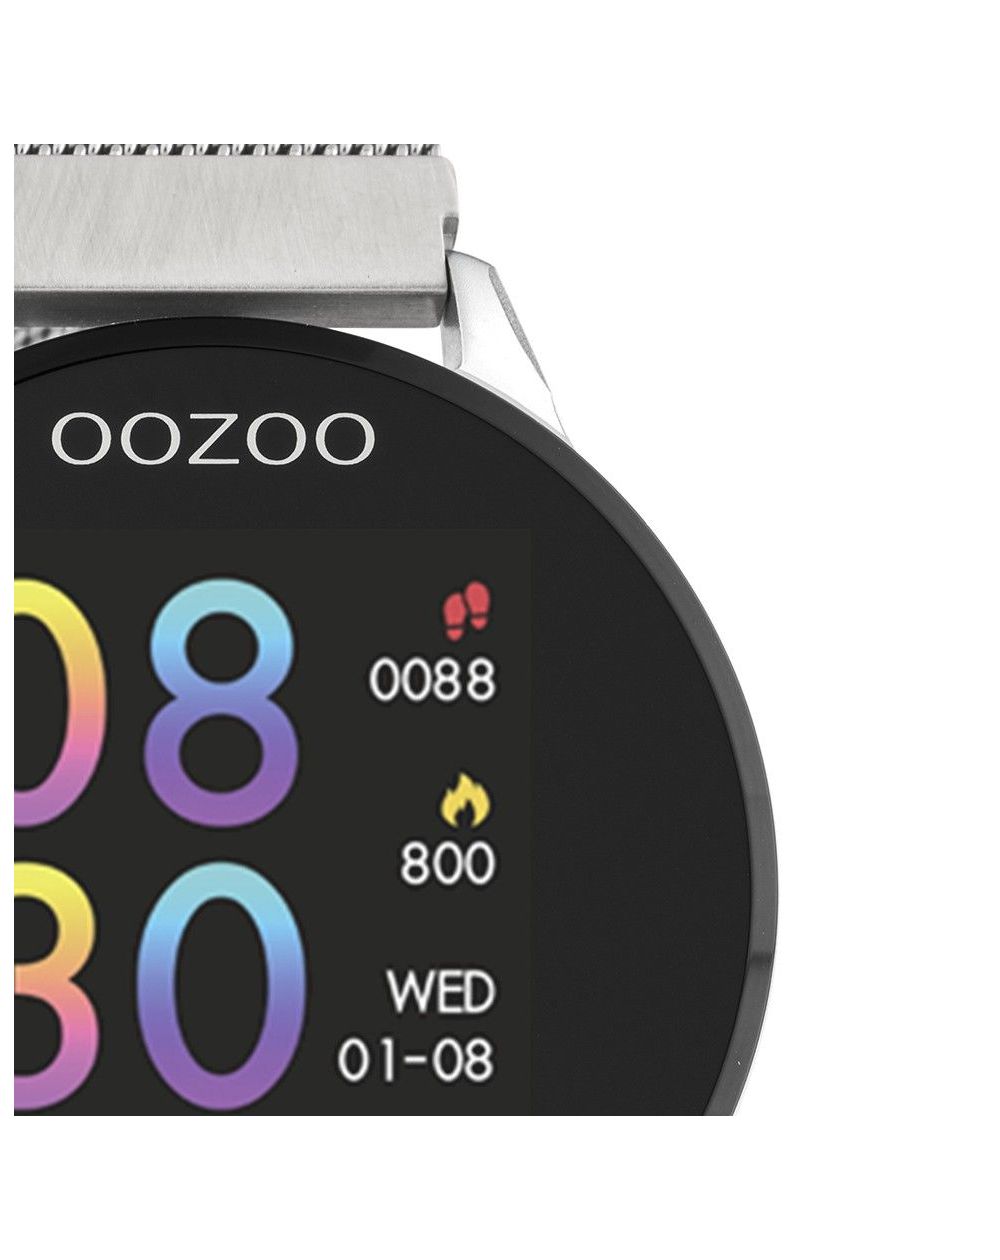 Montre Oozoo Q00116 - Smartwatch - Marque OOZOO - Livraison gratuite